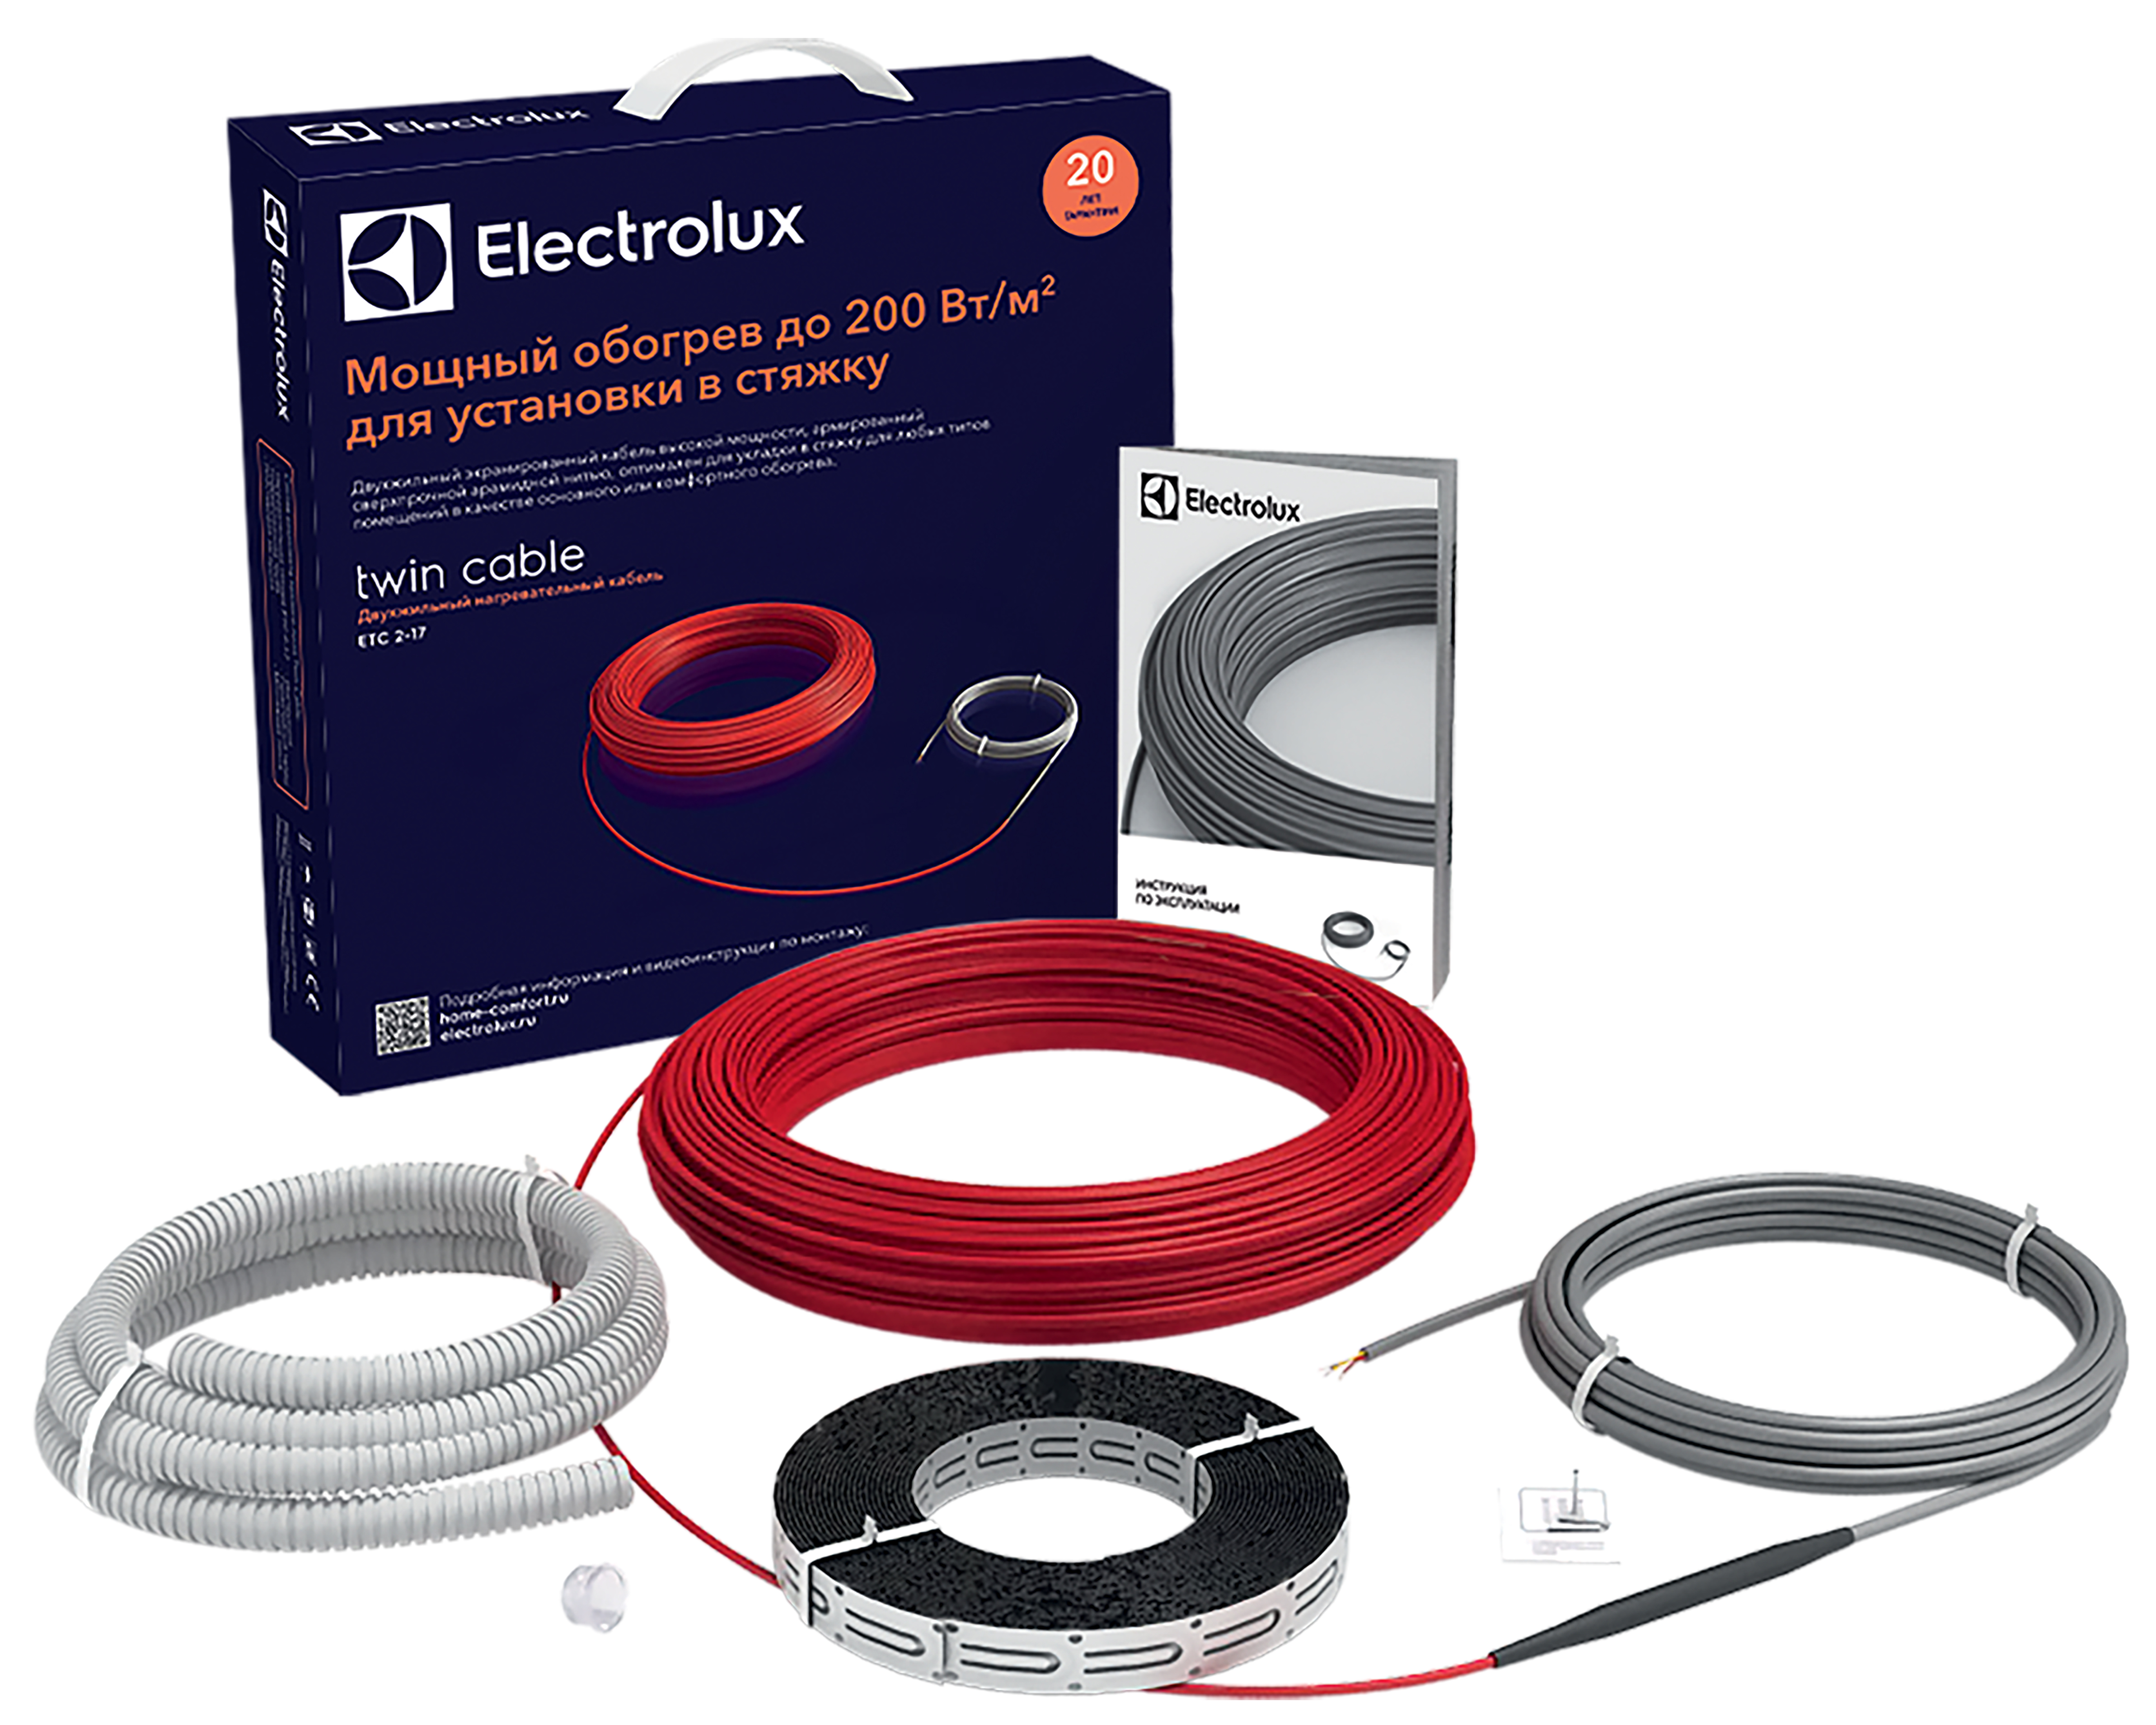 Теплый пол Electrolux под линолеум Electrolux Twin Cable ETC 2-17-2500